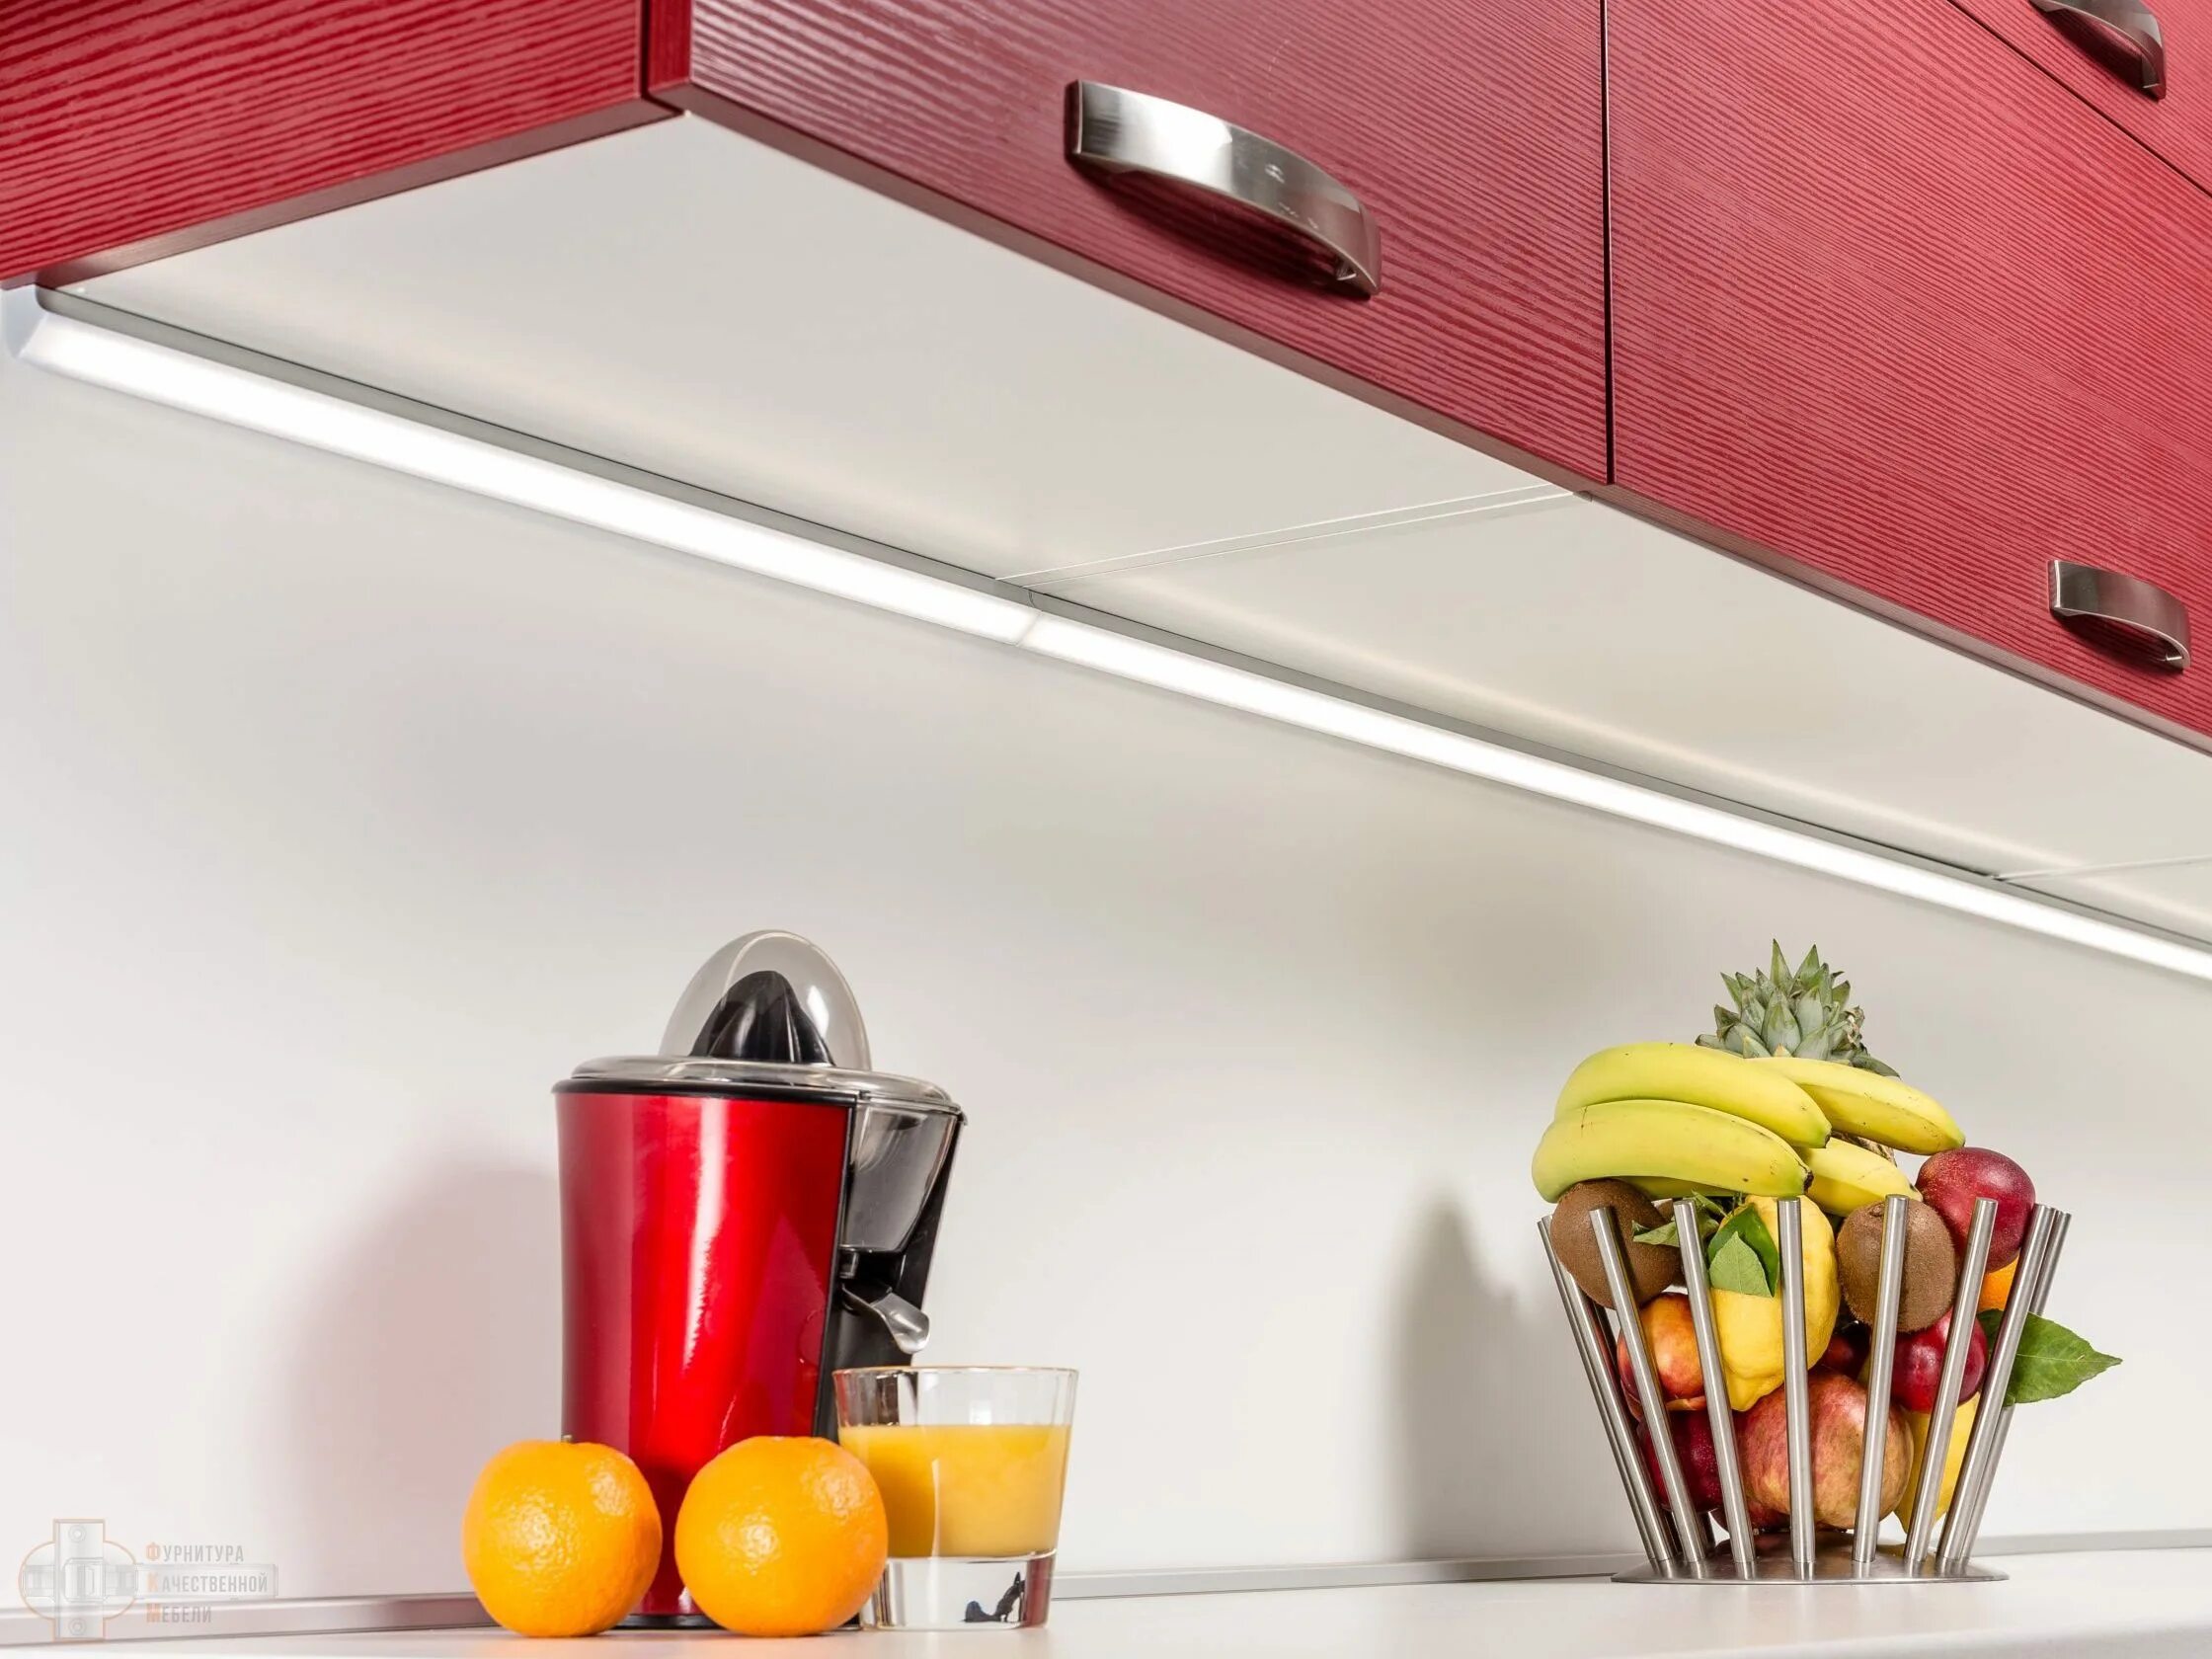 Evoline светодиодный светильник 560 мм. Светильник для подсветки кухни под шкафом поворотный Luka 79154/08/36. Wel-7072 светодиодная подсветка 8 Вт.